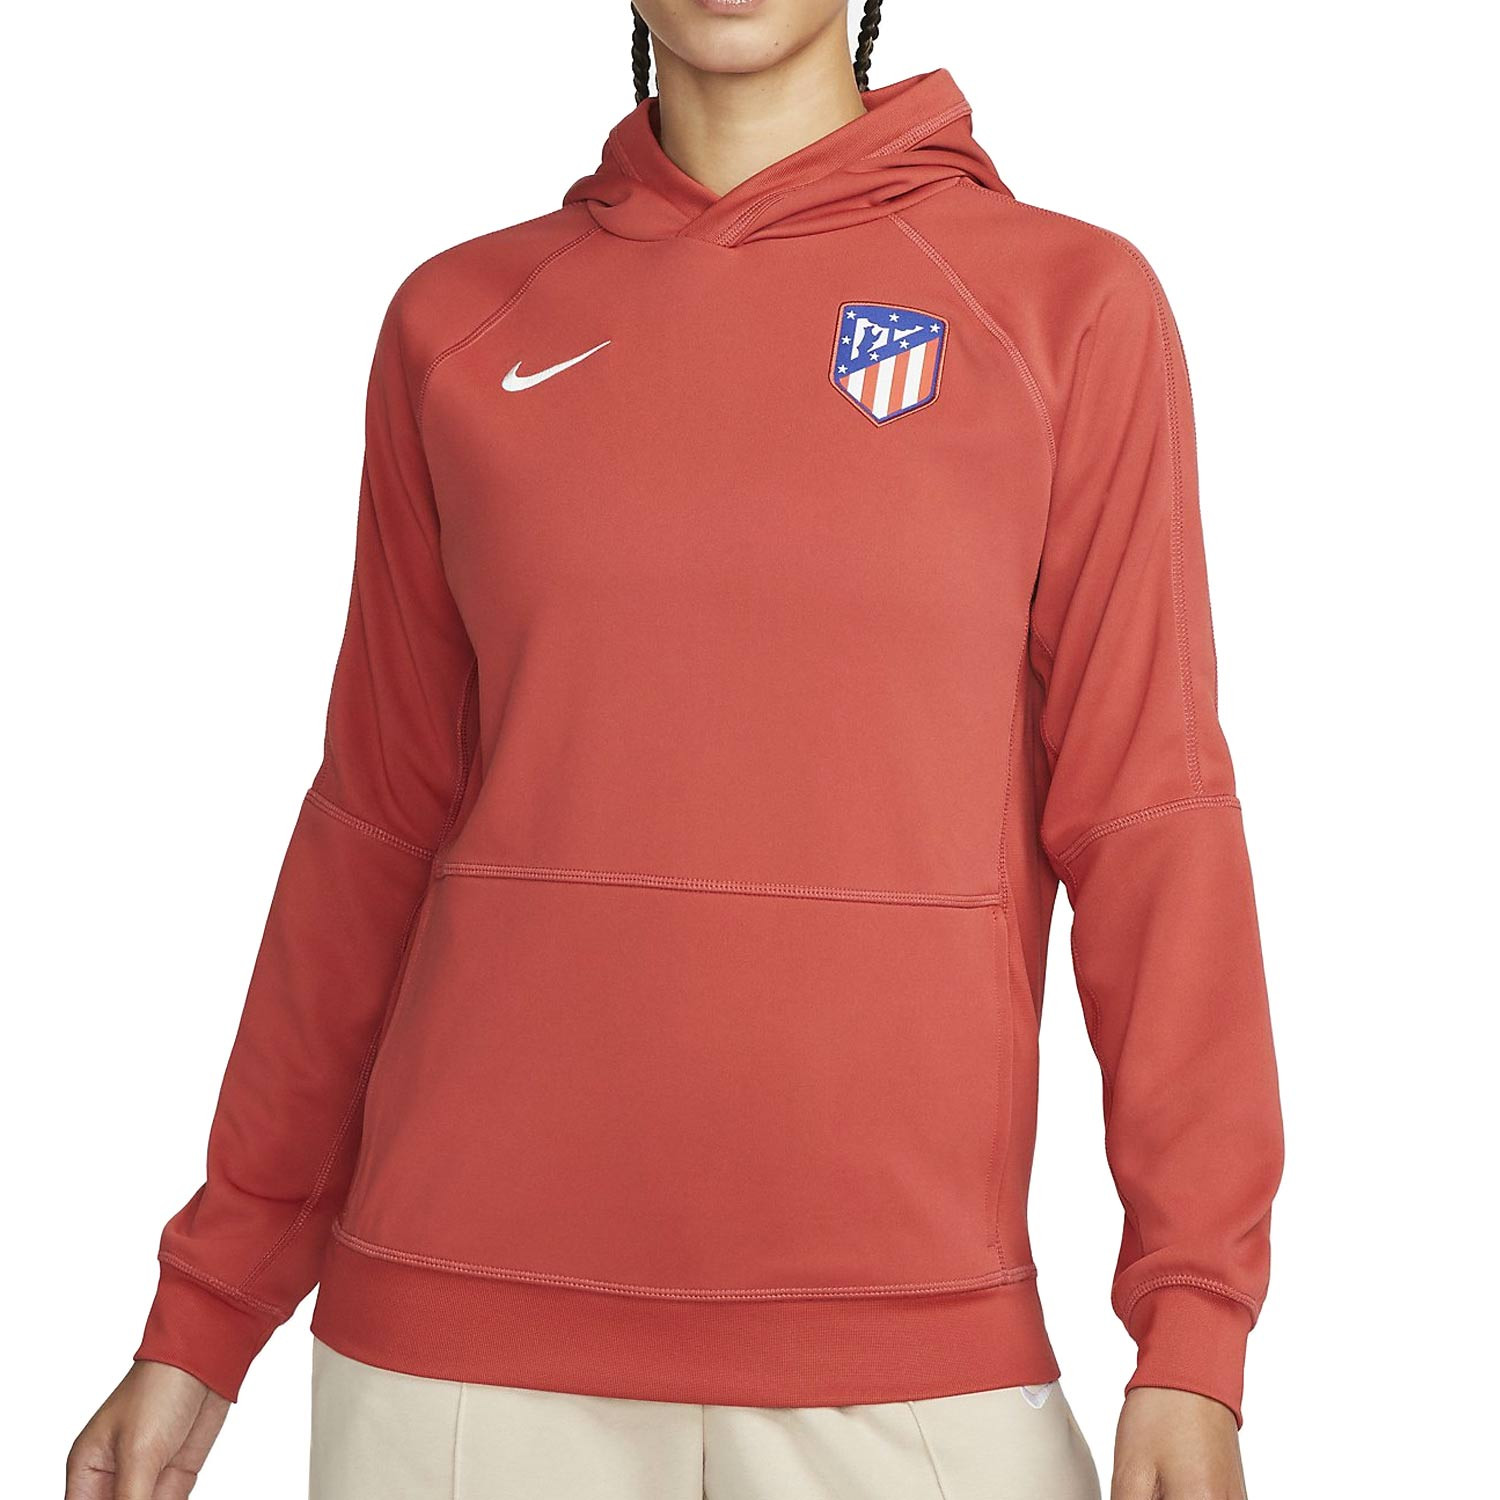 Camiseta Nike Travel del Atlético de Madrid - Rosado